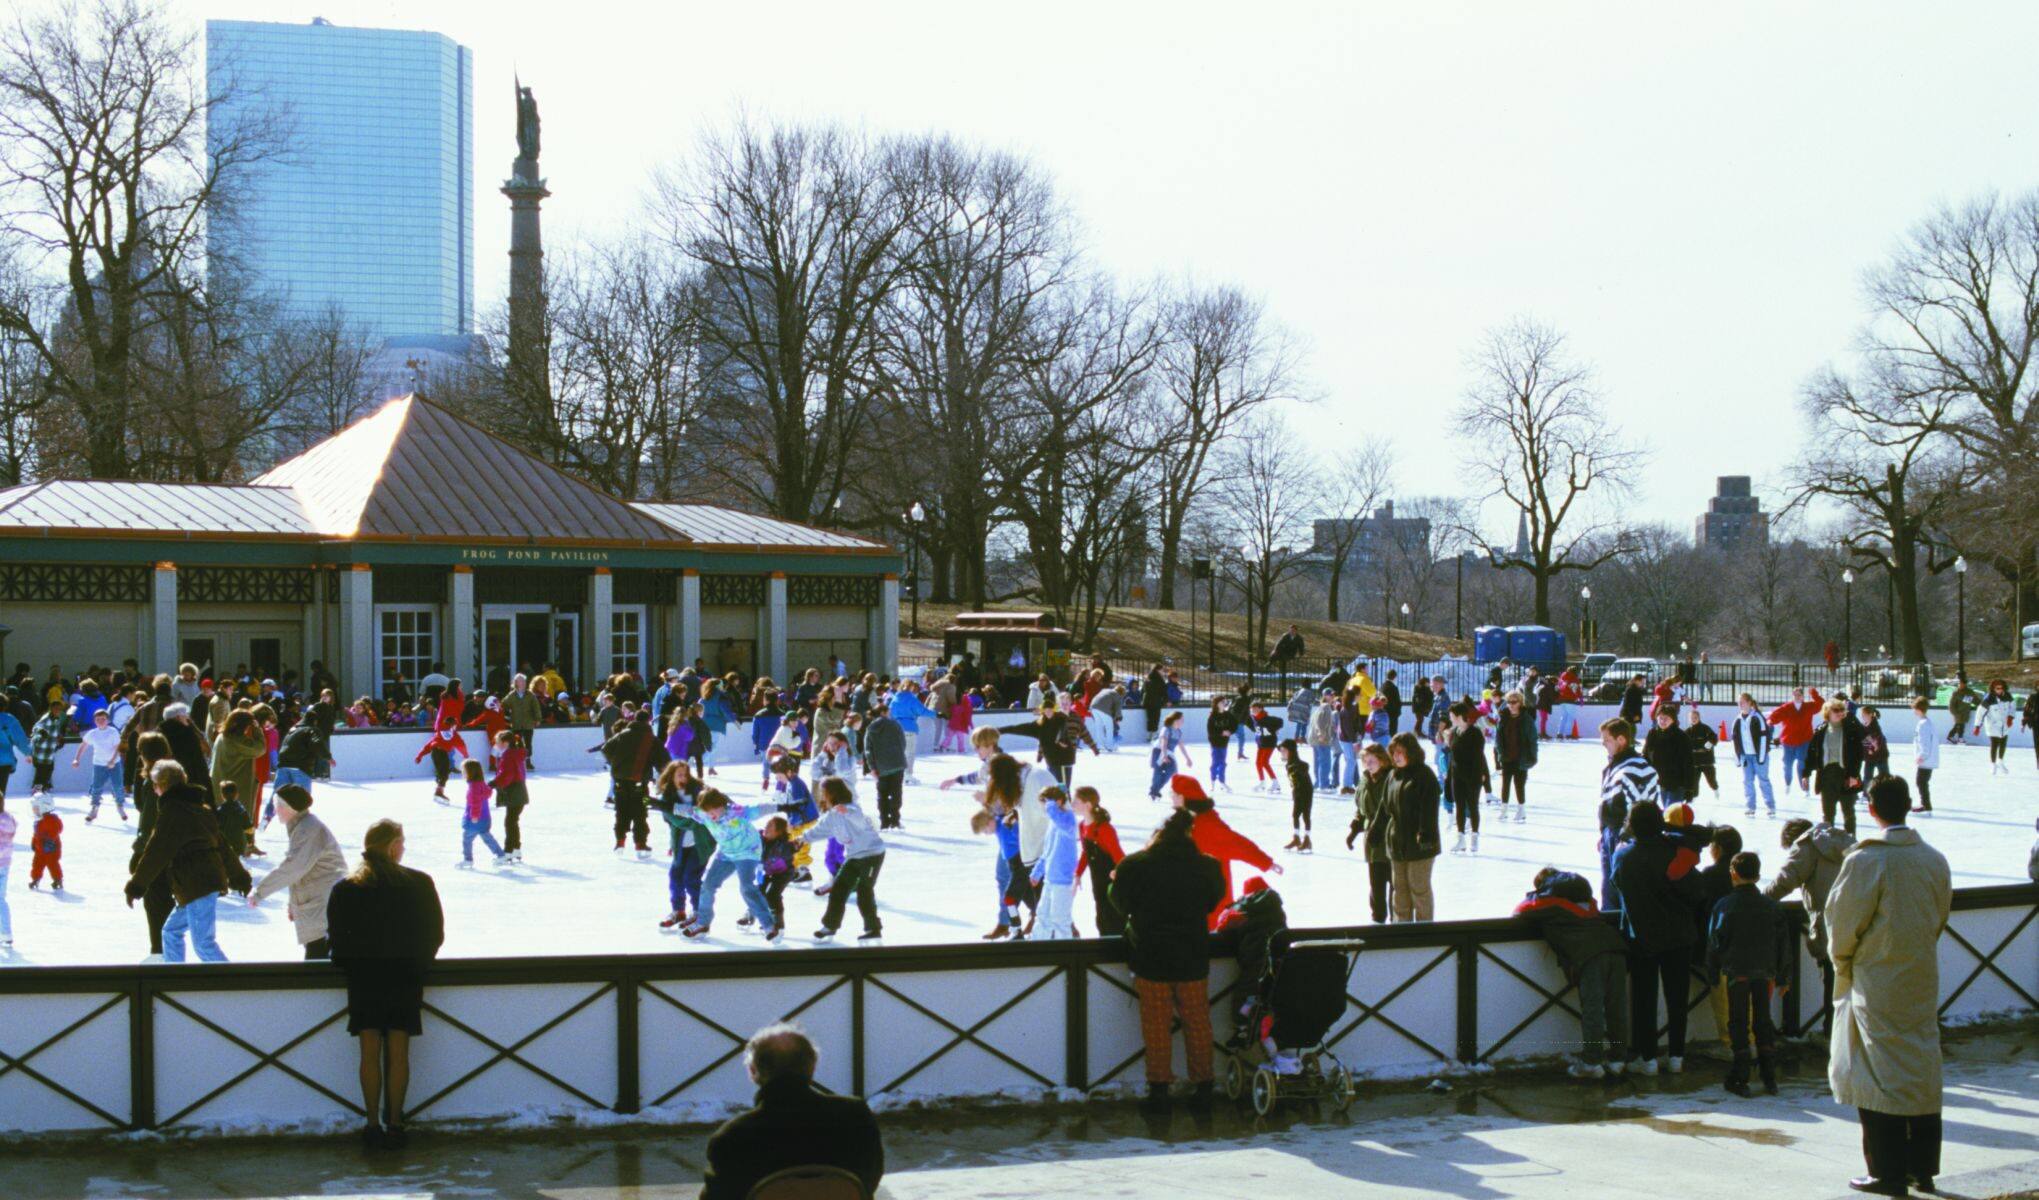 Ice Skating in Boston Common